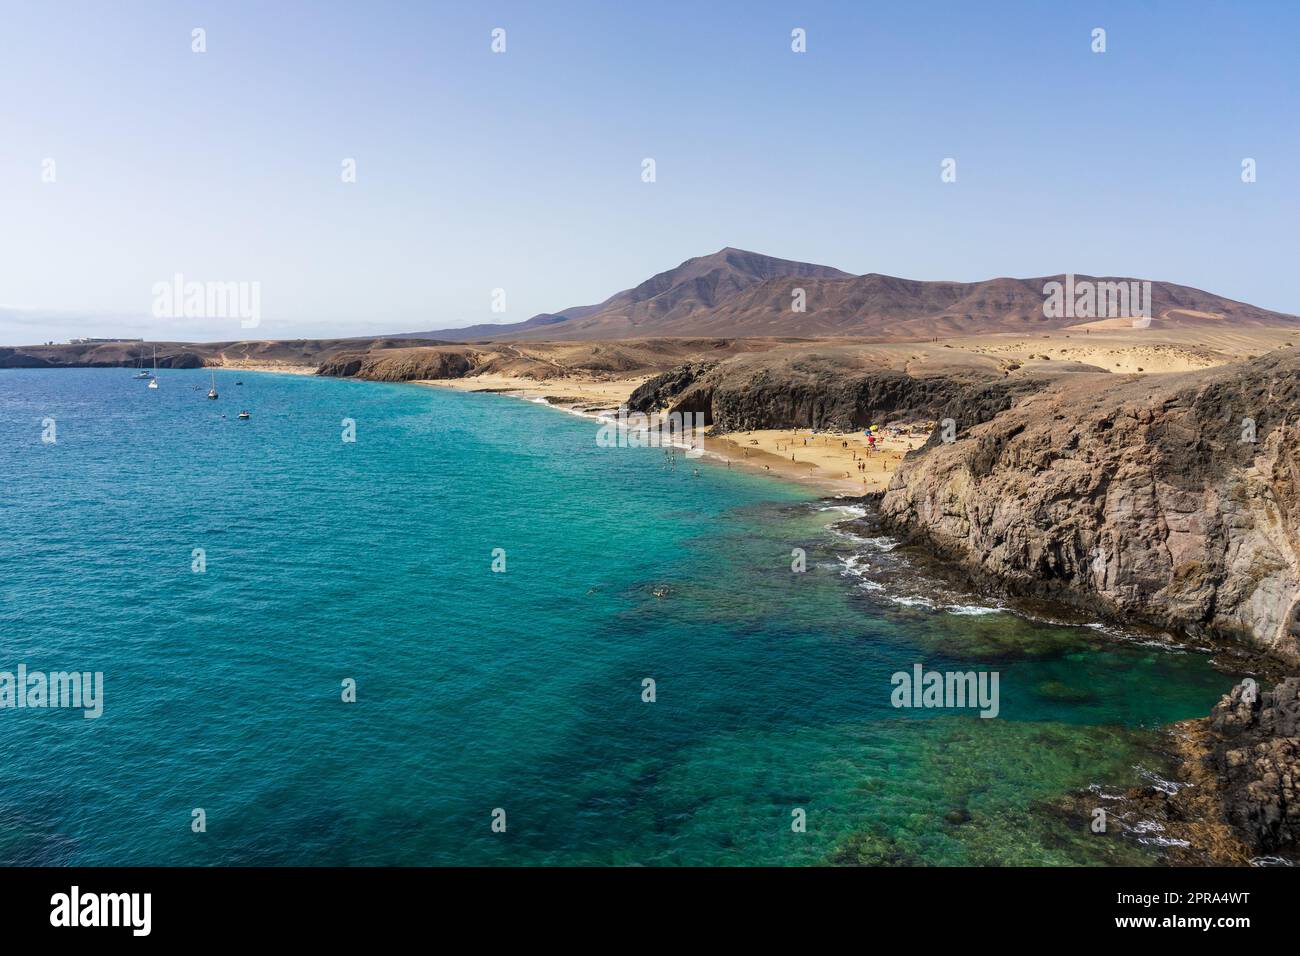 Playa de la Cera, Playa del Pozo und Playa Mujeres sind beliebte und schöne Strände auf Lanzarote, Kanarische Inseln, Spanien. Stockfoto